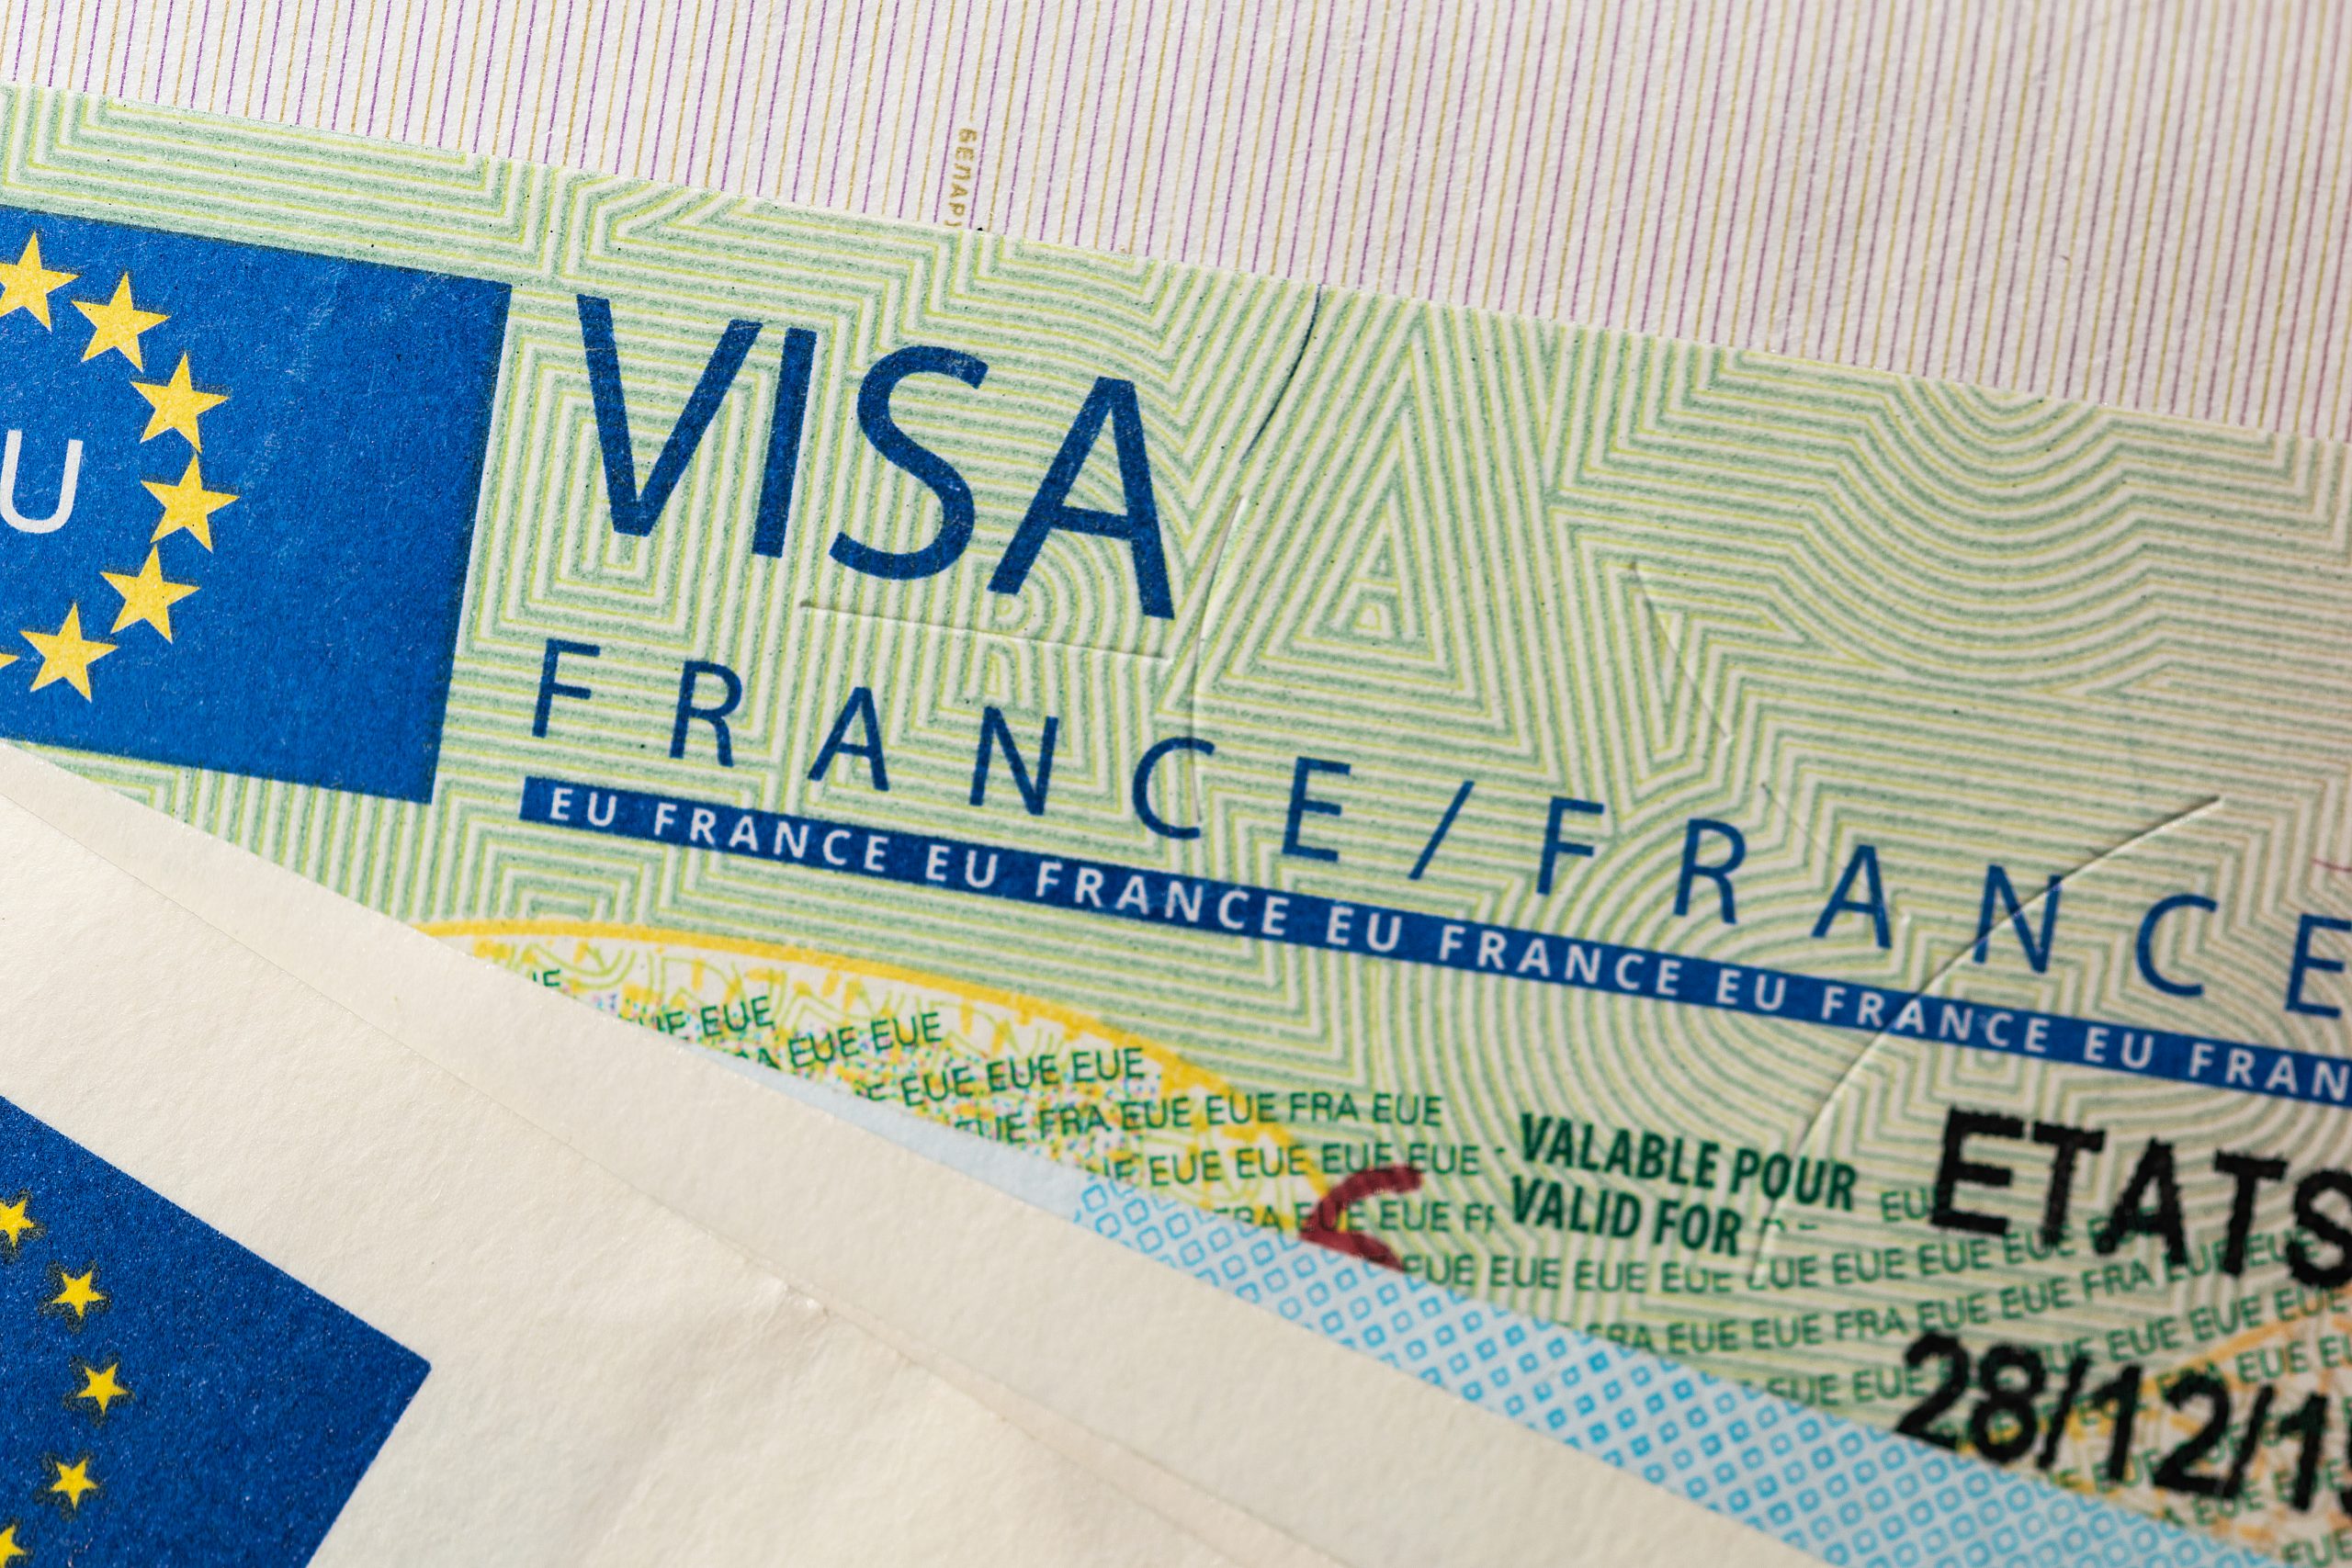 التأشيرة الفرنسية.. دعوات حقوقية لوقفة رمزية أمام مقر بعثة الاتحاد الأوروبي